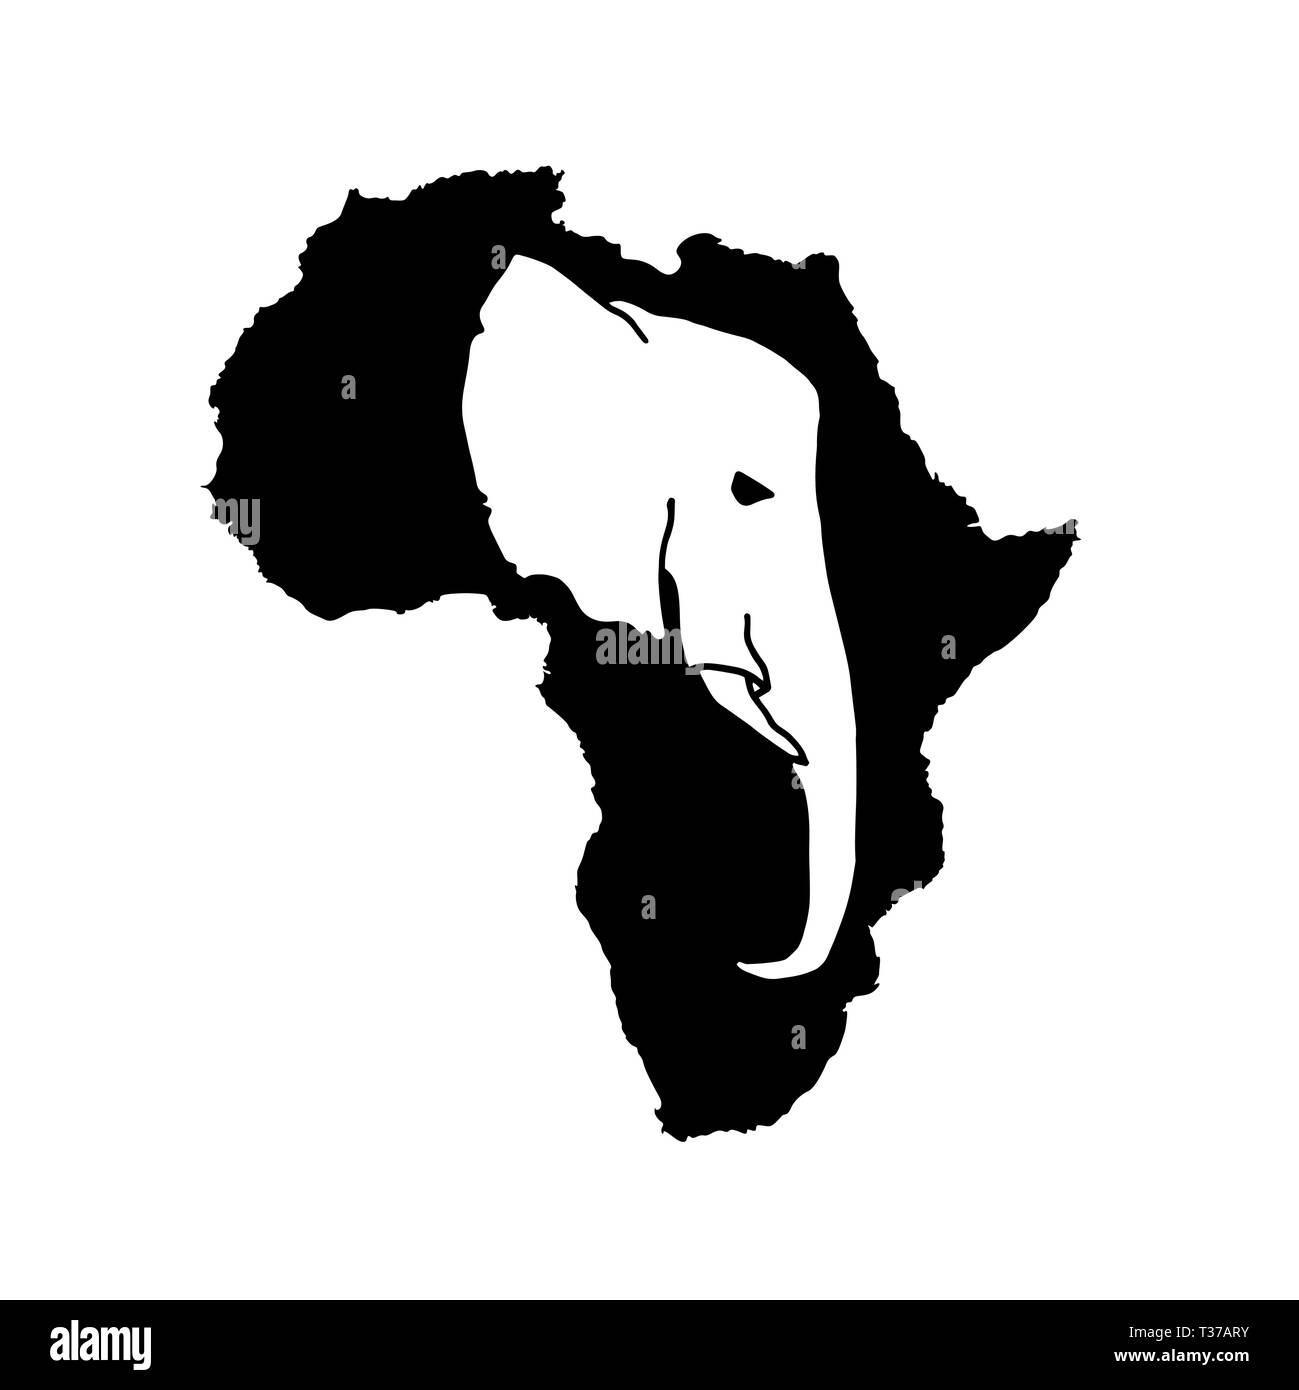 Silhouette vecteur d'Afrique noire avec tête d'éléphant blanc silhouette à l'intérieur. Illustration de Vecteur